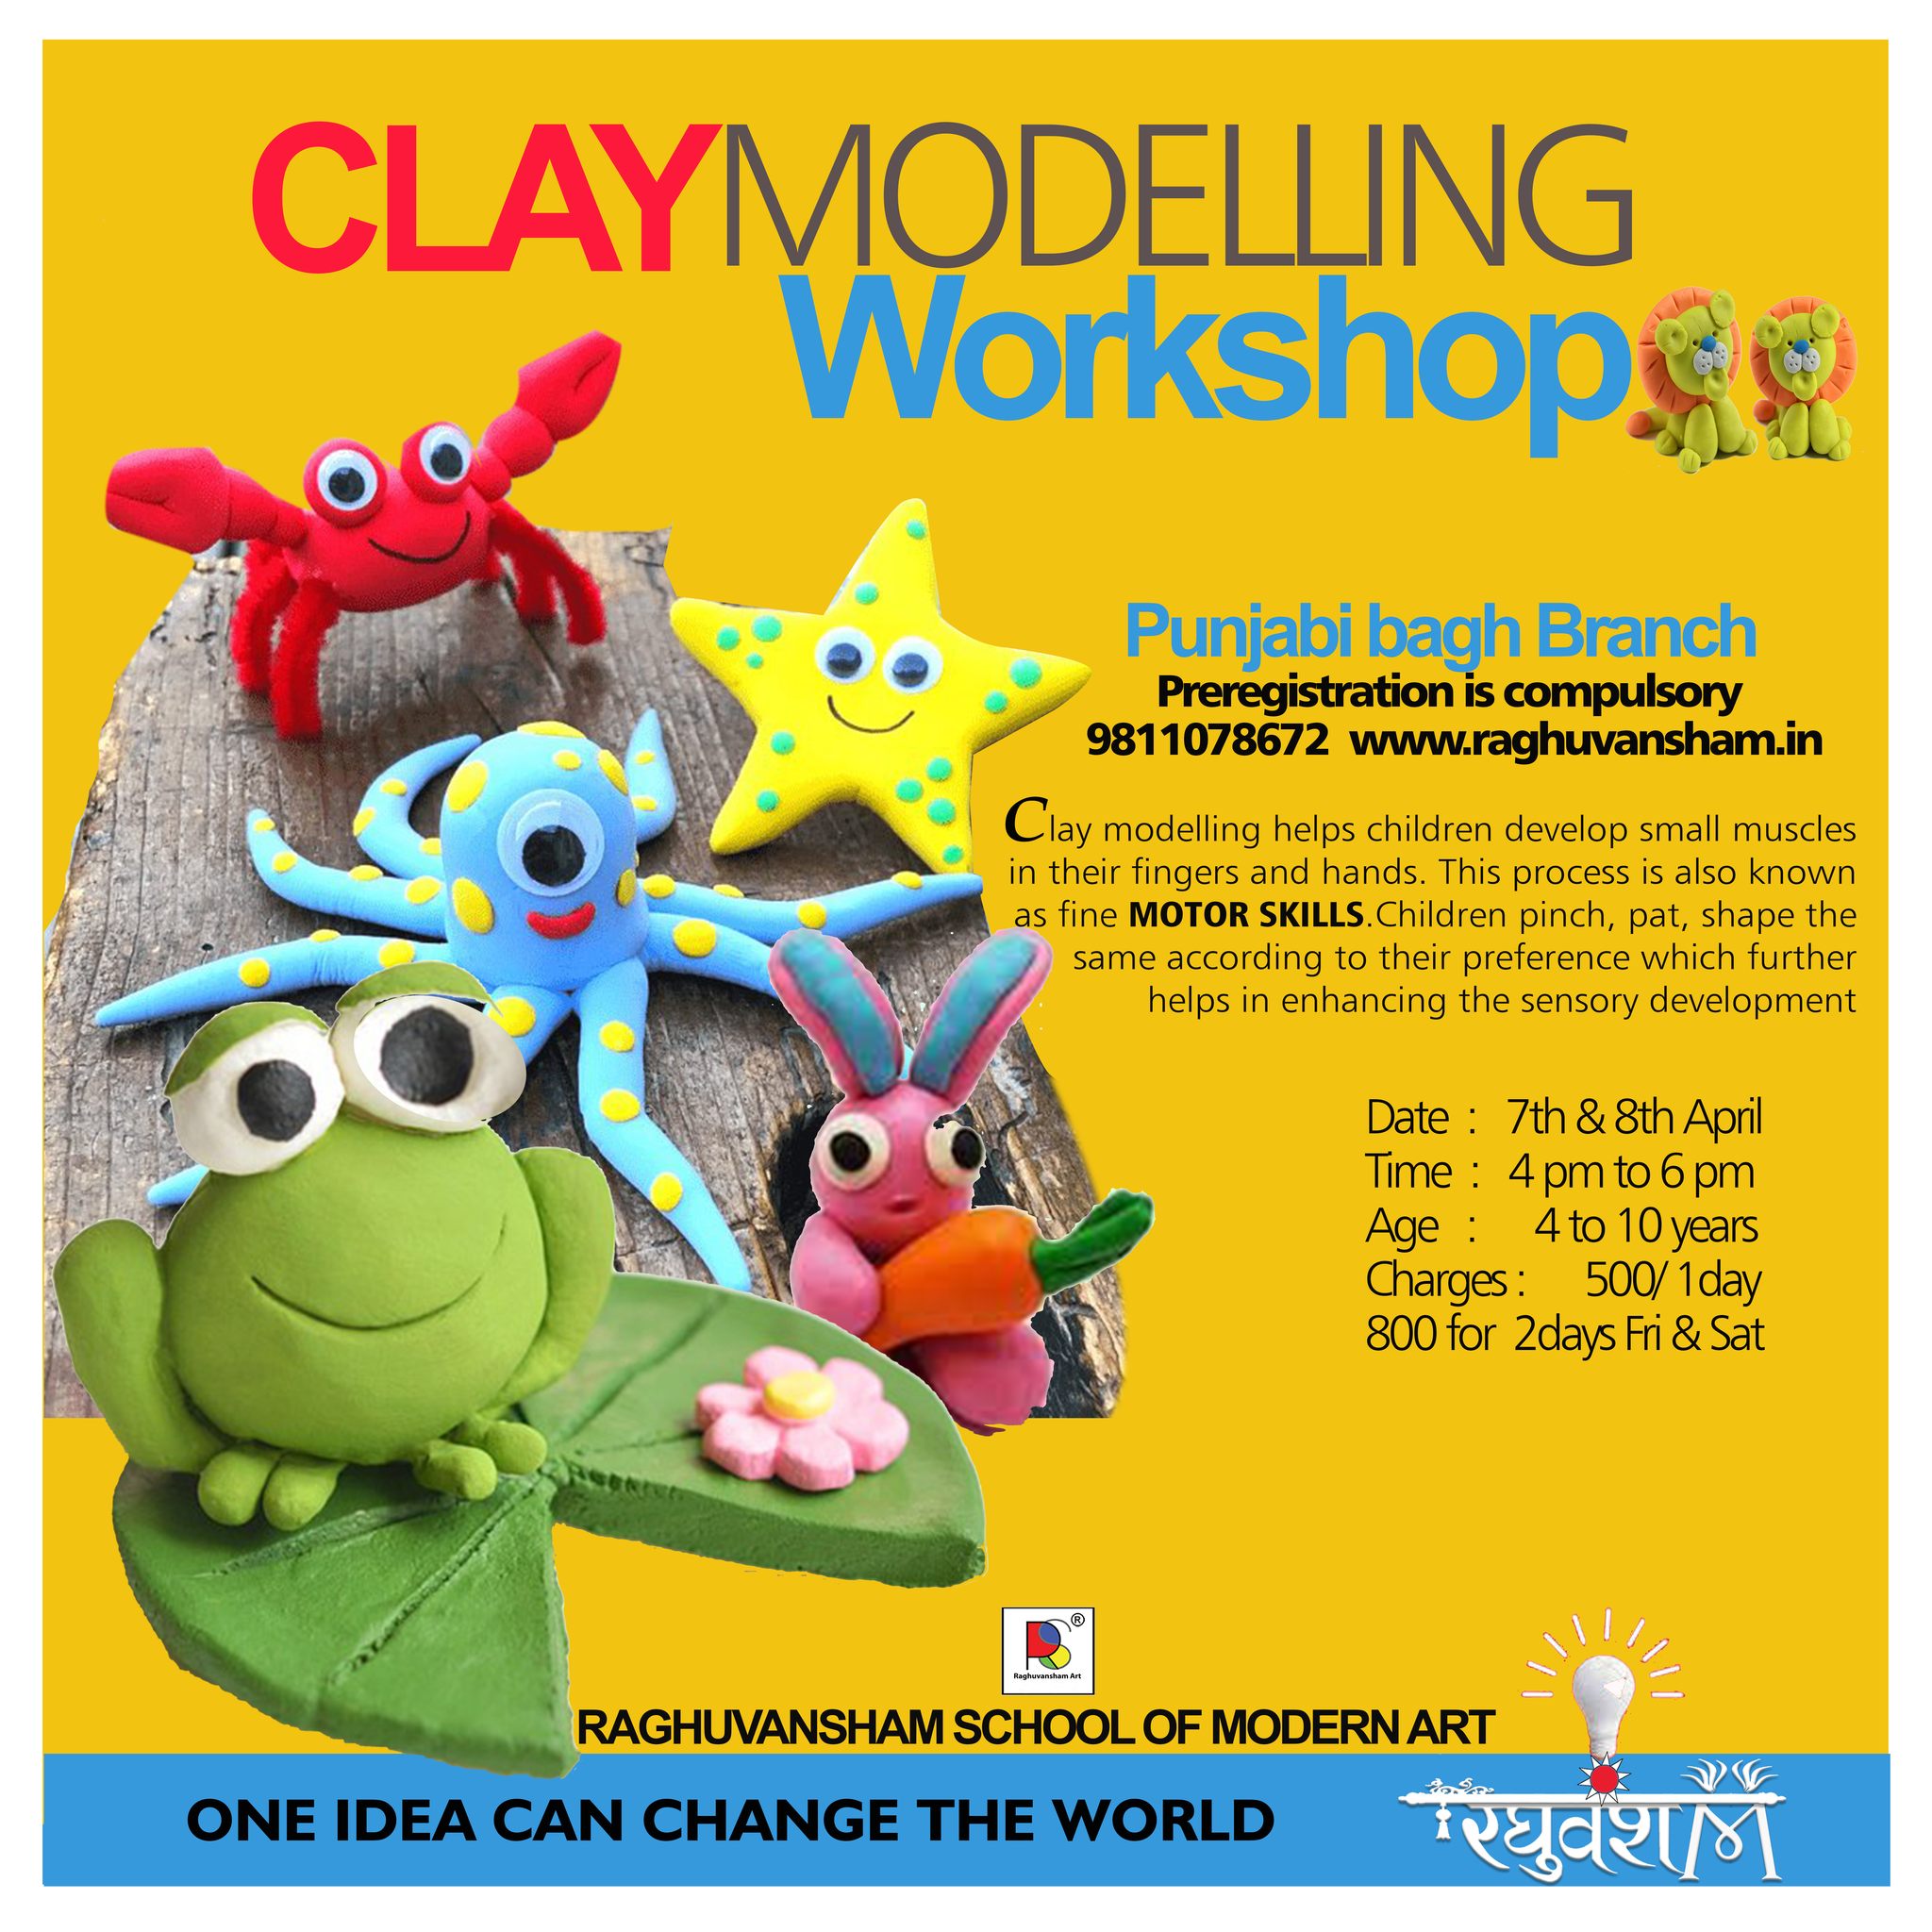 Clay Modelling WorkshopEducation and LearningWorkshopsWest DelhiPunjabi Bagh